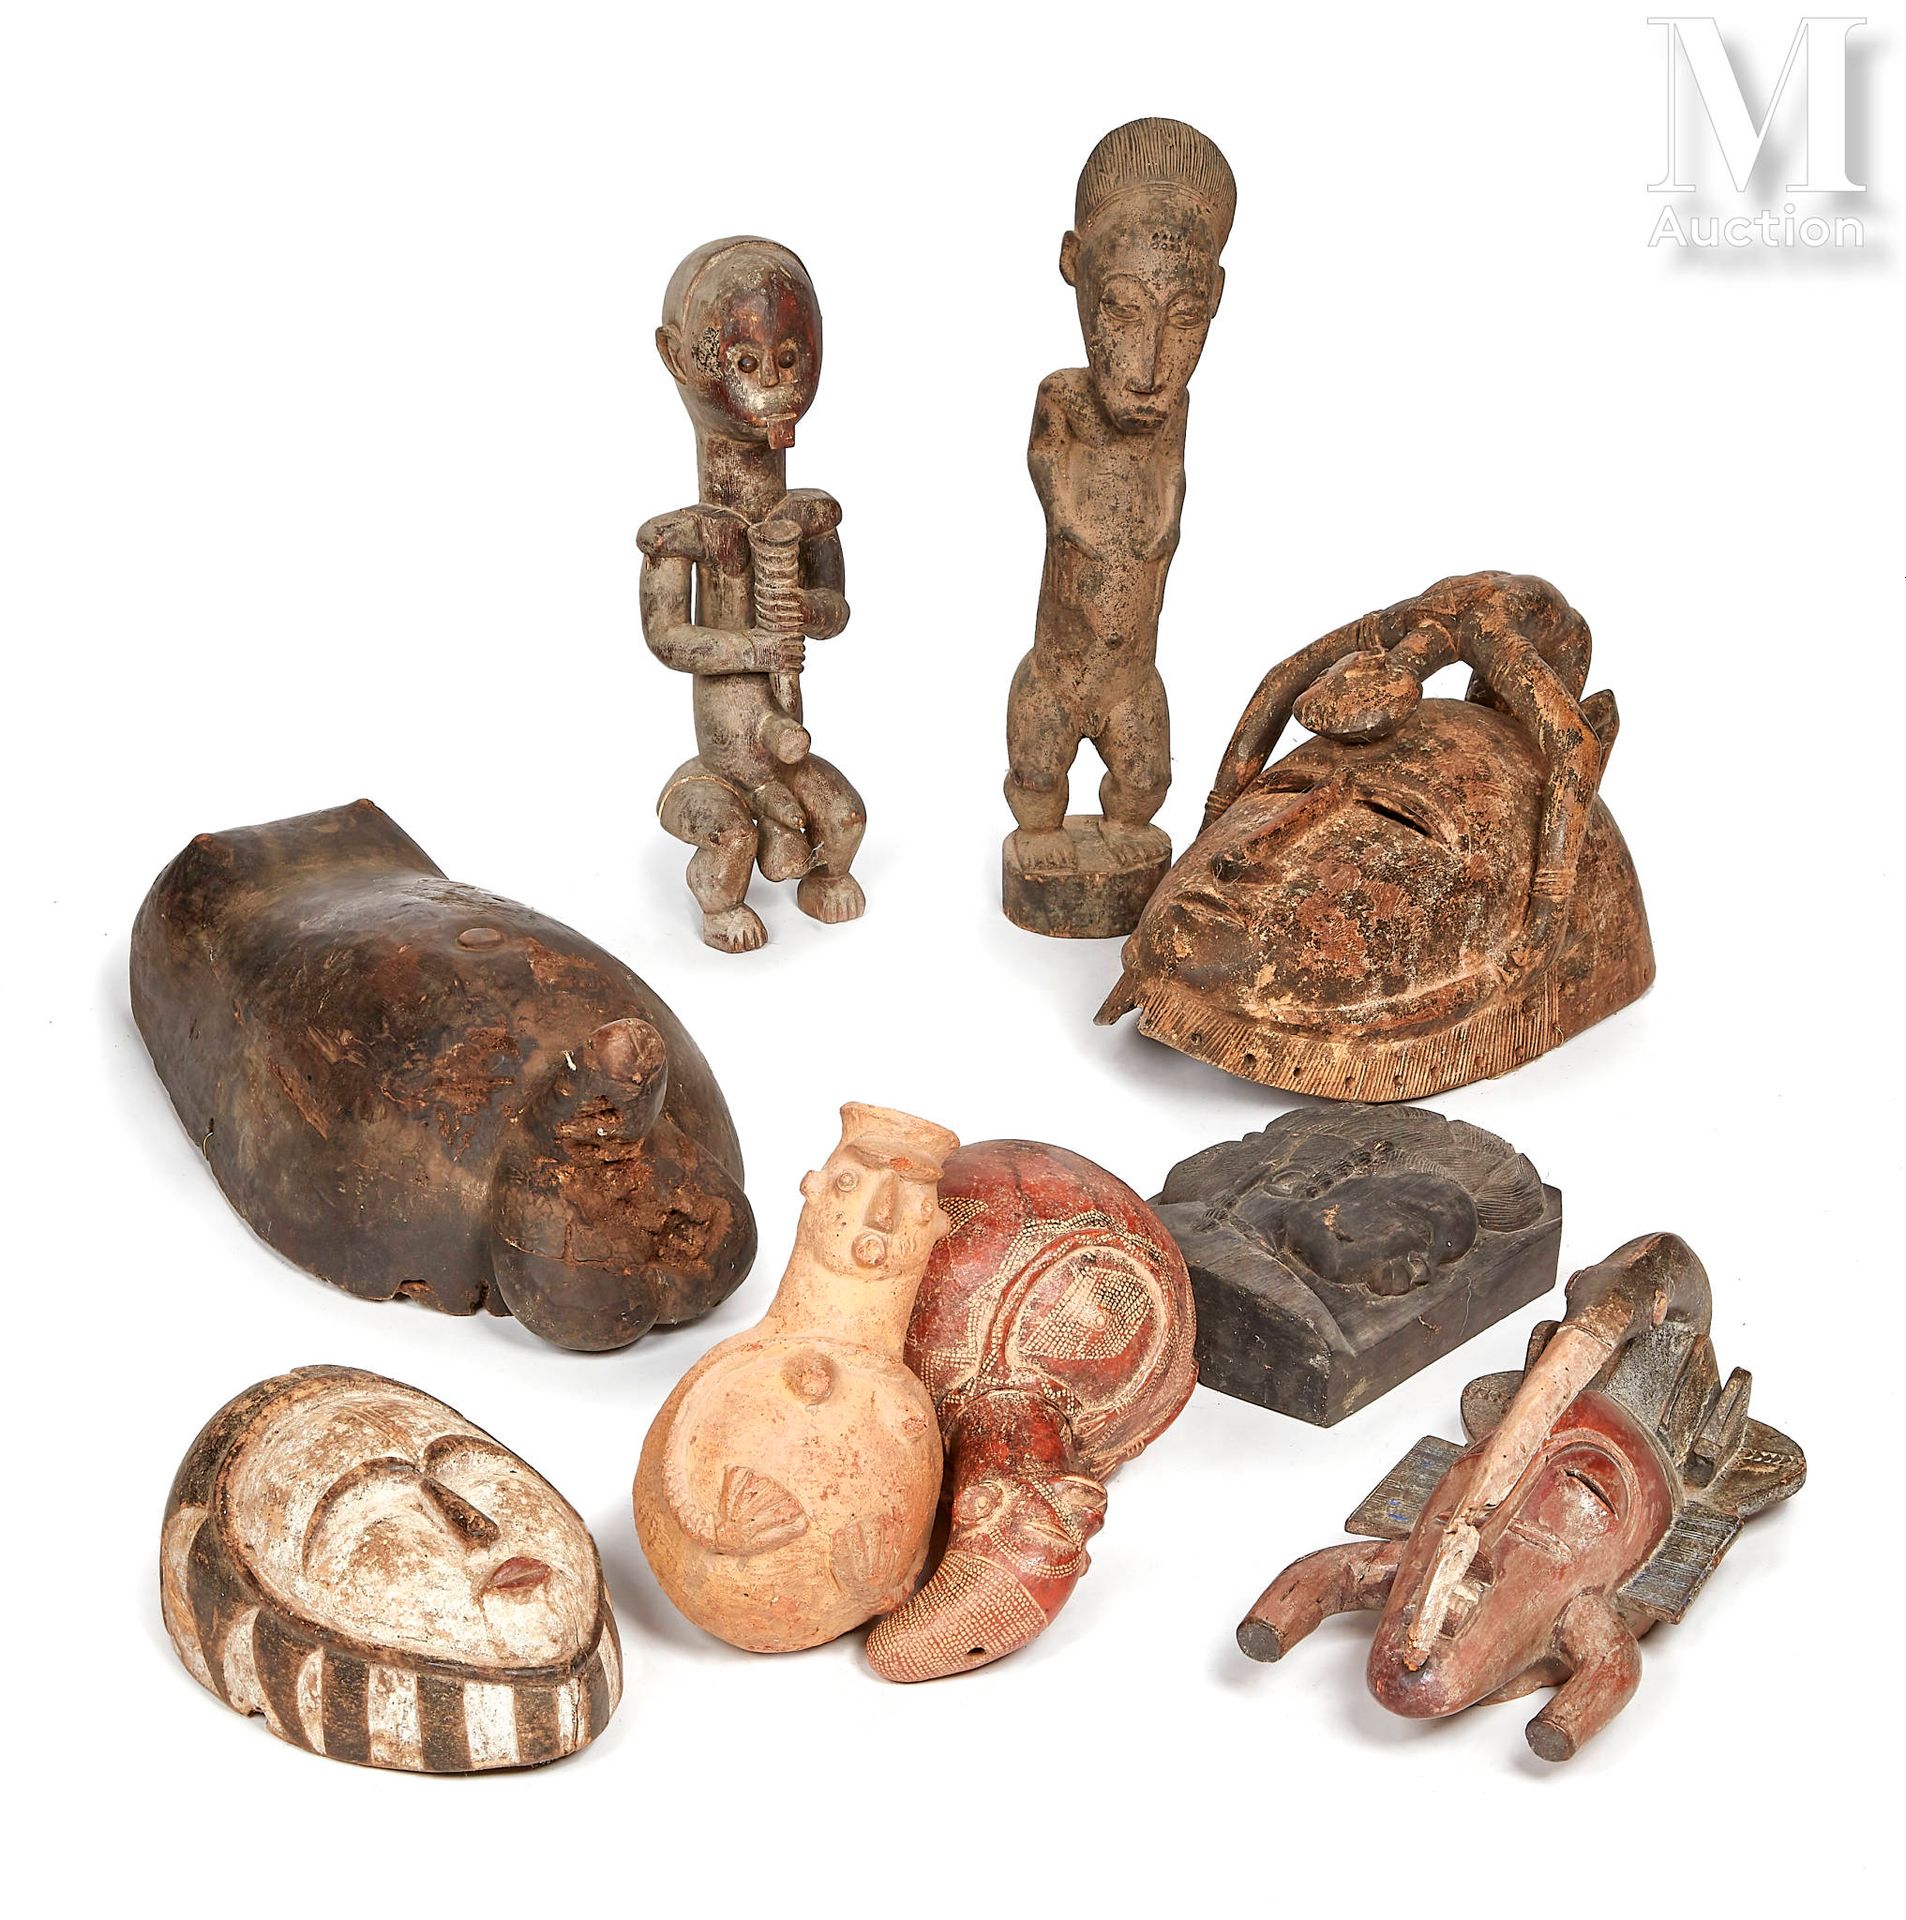 10 masques et statues Dans le style de l’Afrique ancestrale
Vendu en l’état